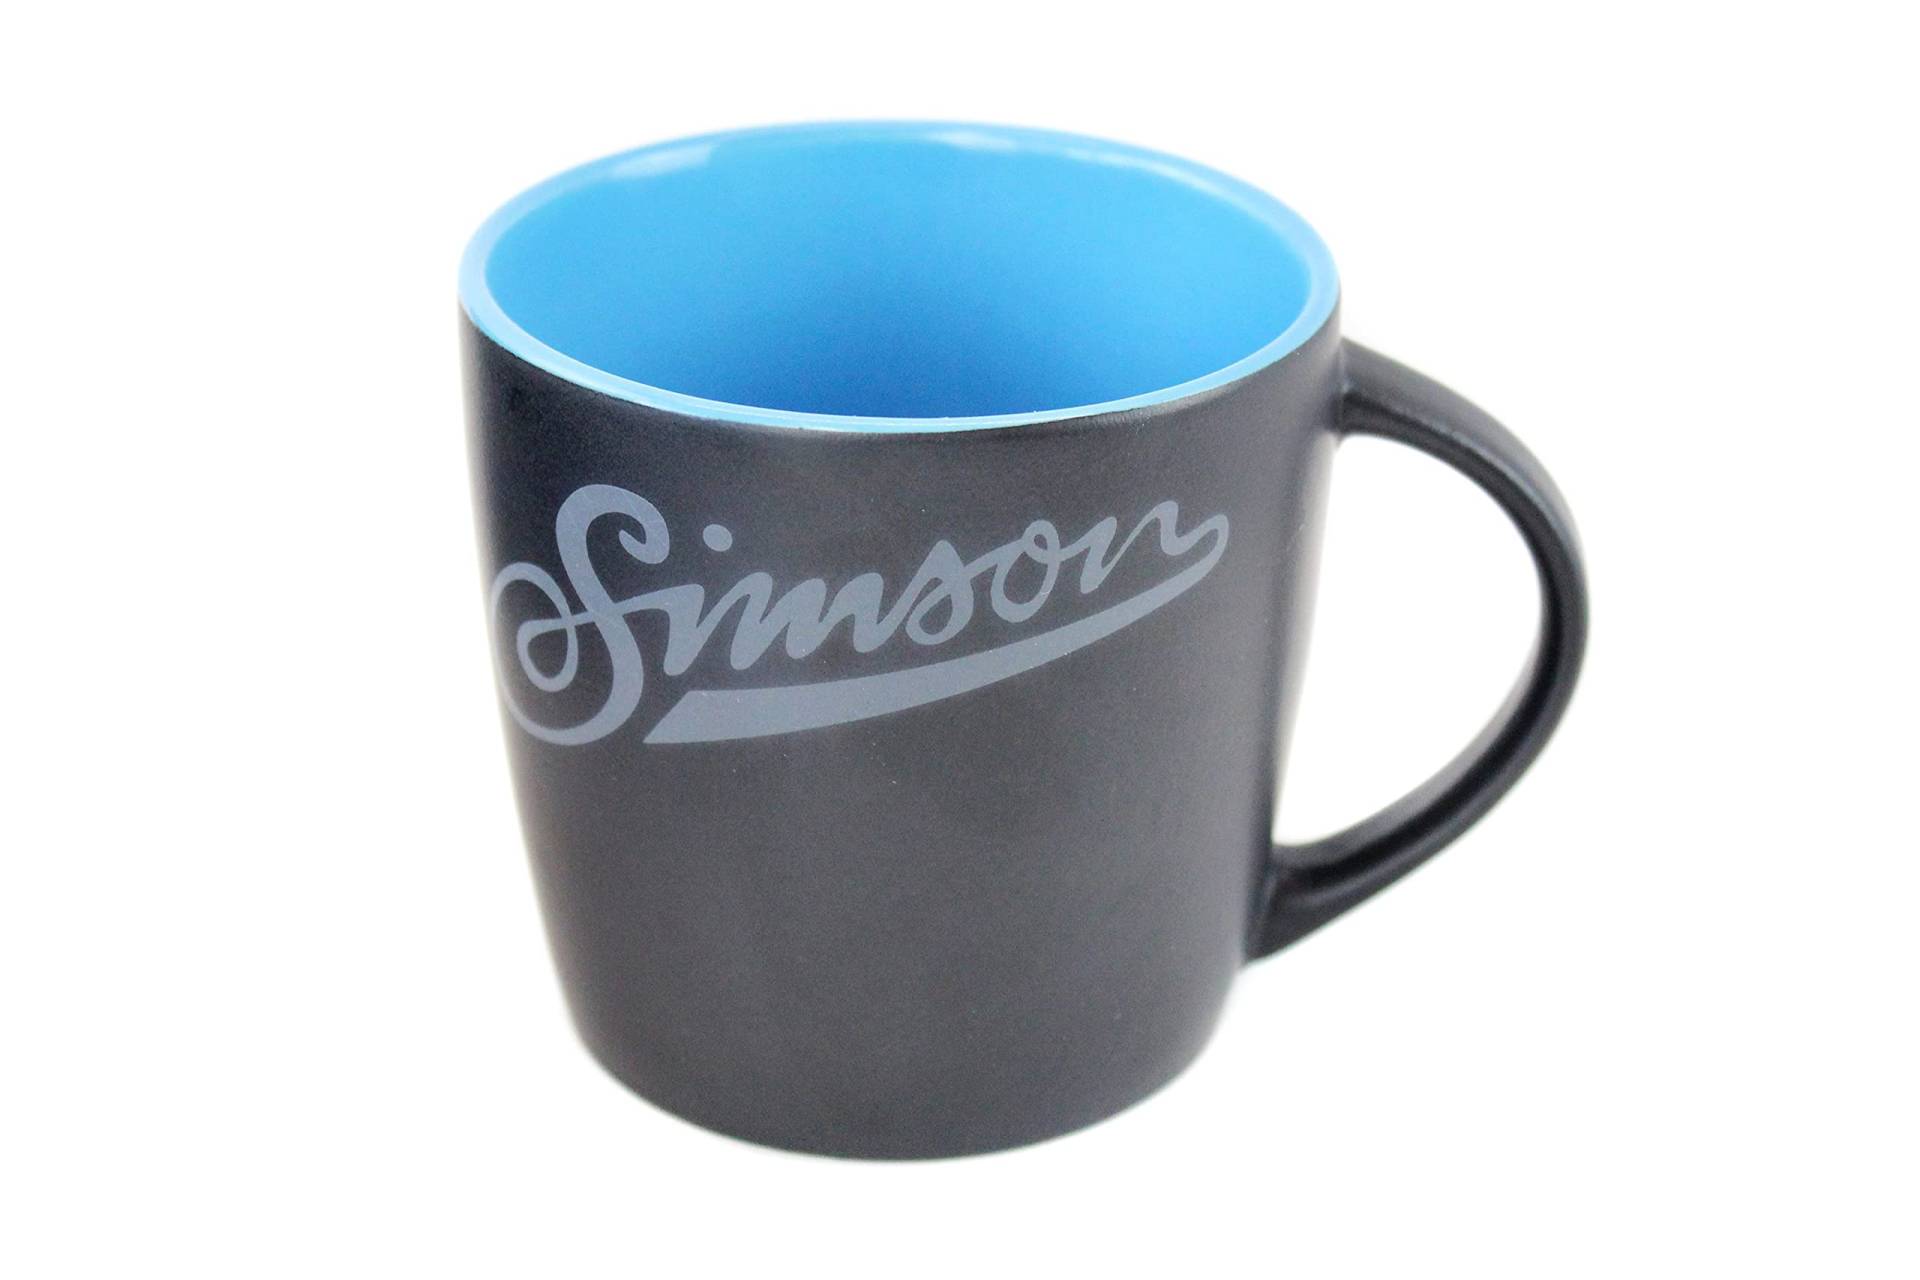 Tasse, Kaffeetasse mit Simson Motiv in Schwarz Blau, Sammleredition, Fassungsvermögen 250ml, MZA-Fanartikel von MZA